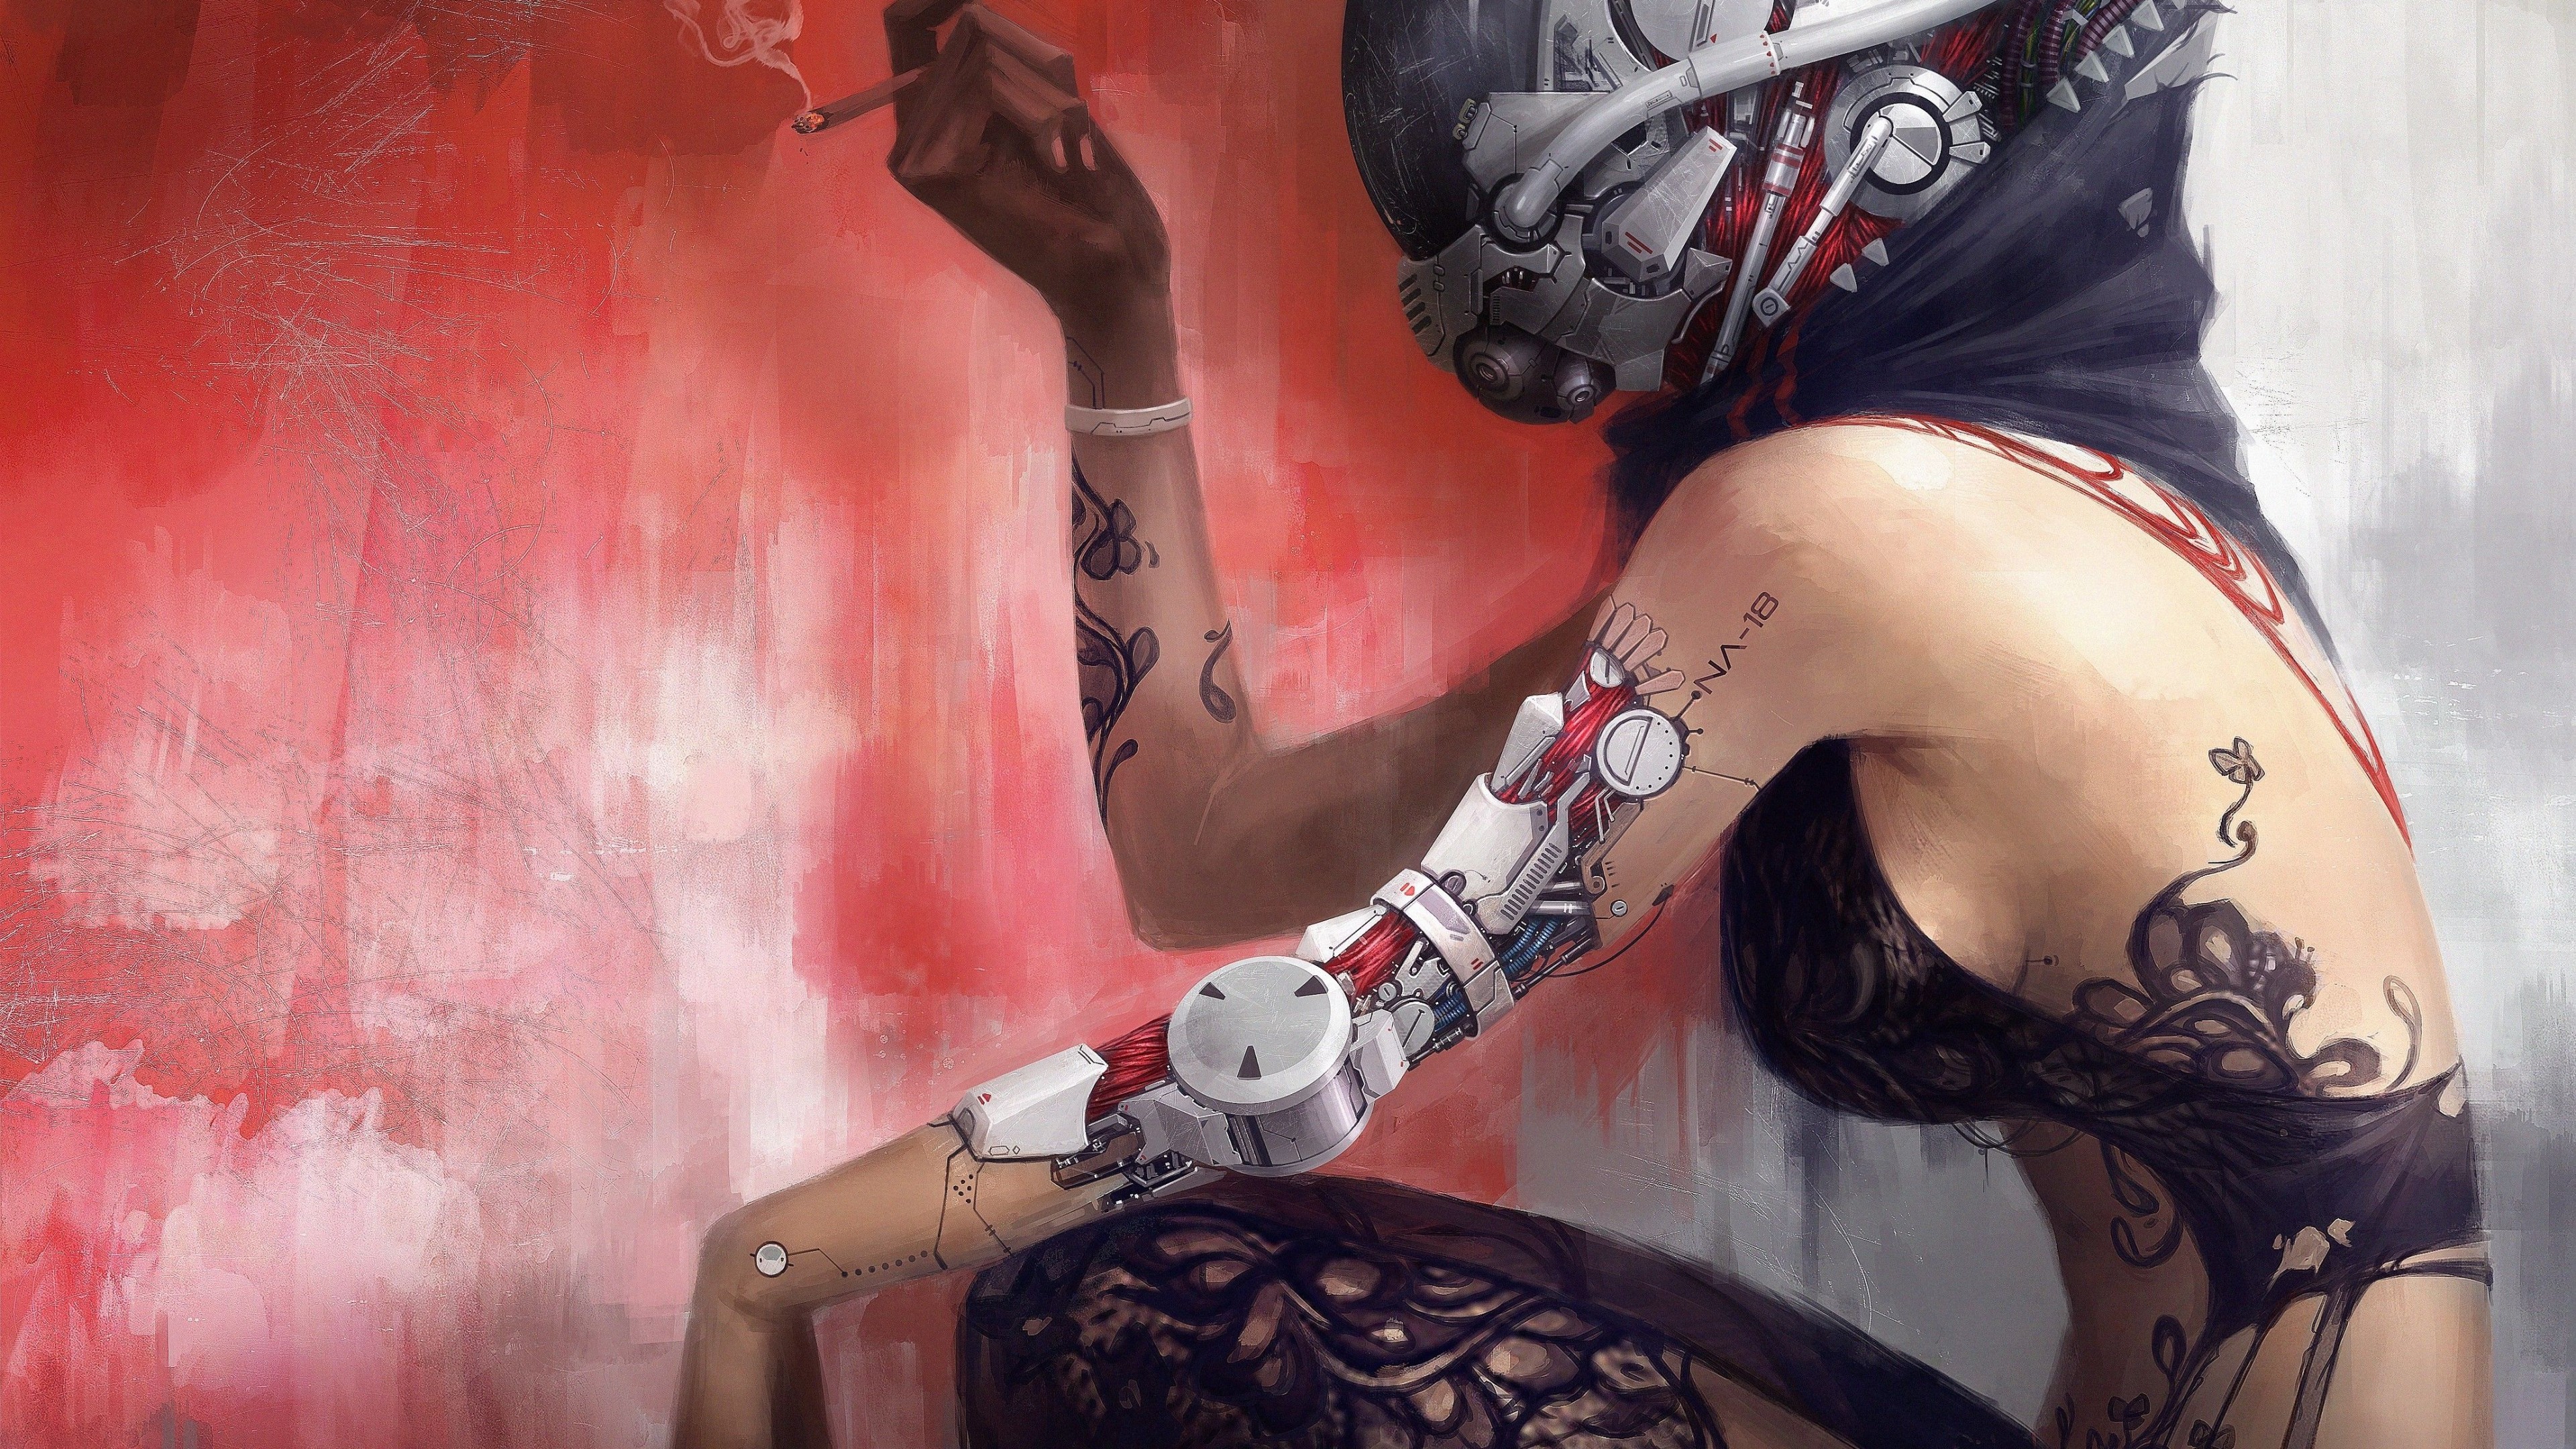 Cyberpunk Girl Art Wallpapers - Wallpaper Cave